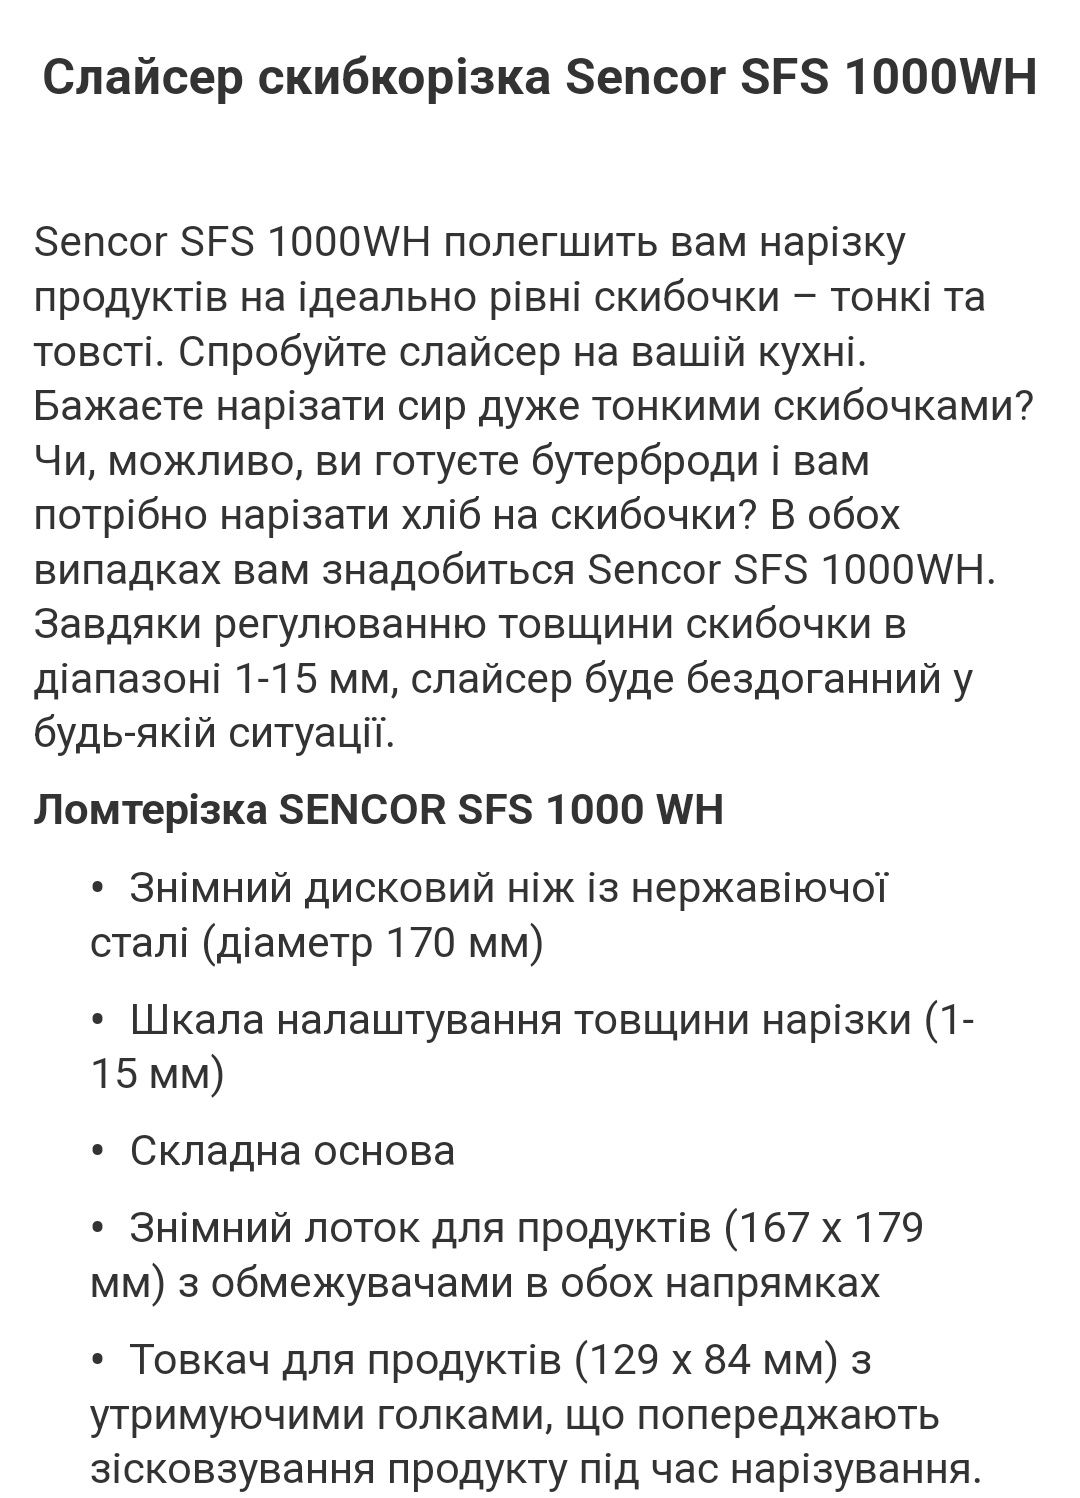 Скиборізка (слайсер) Sencor SFS 1000WH